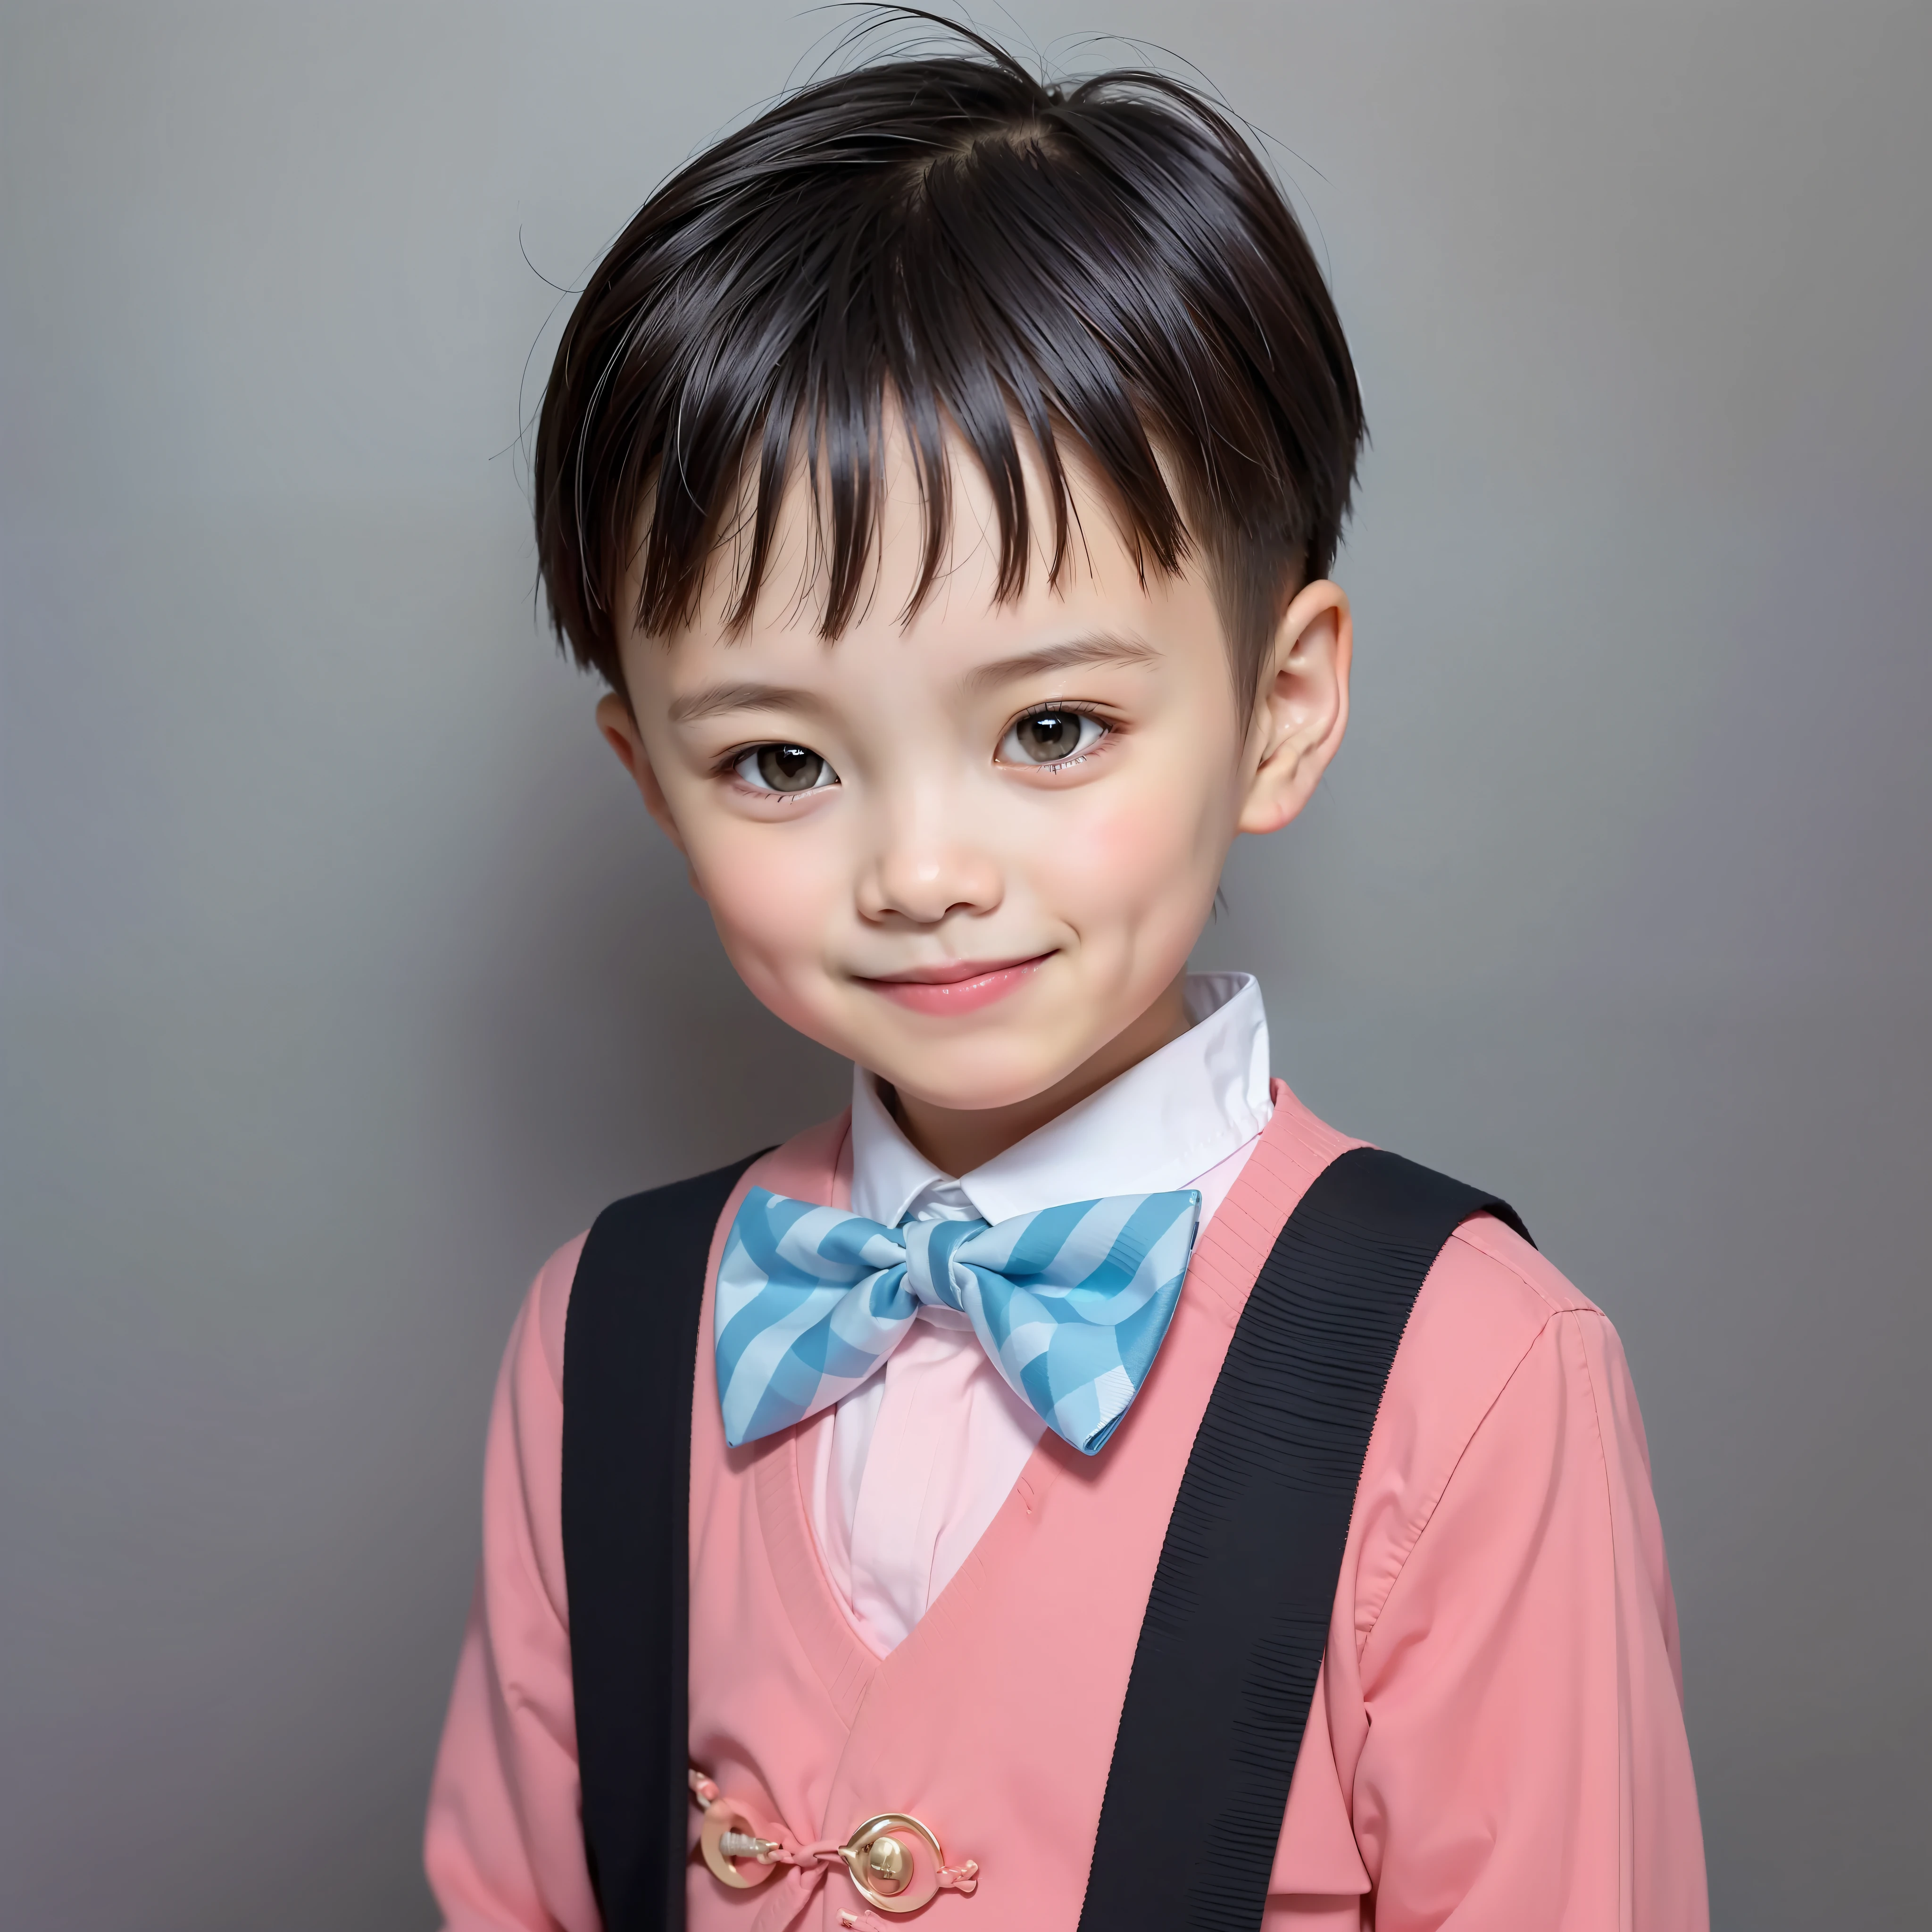 モダンスタイル, 白色の背景, 中国の子供の身分証明書の写真, ハンサム, 笑顔の少年, 黒目, 平頭, ちょうネクタイ